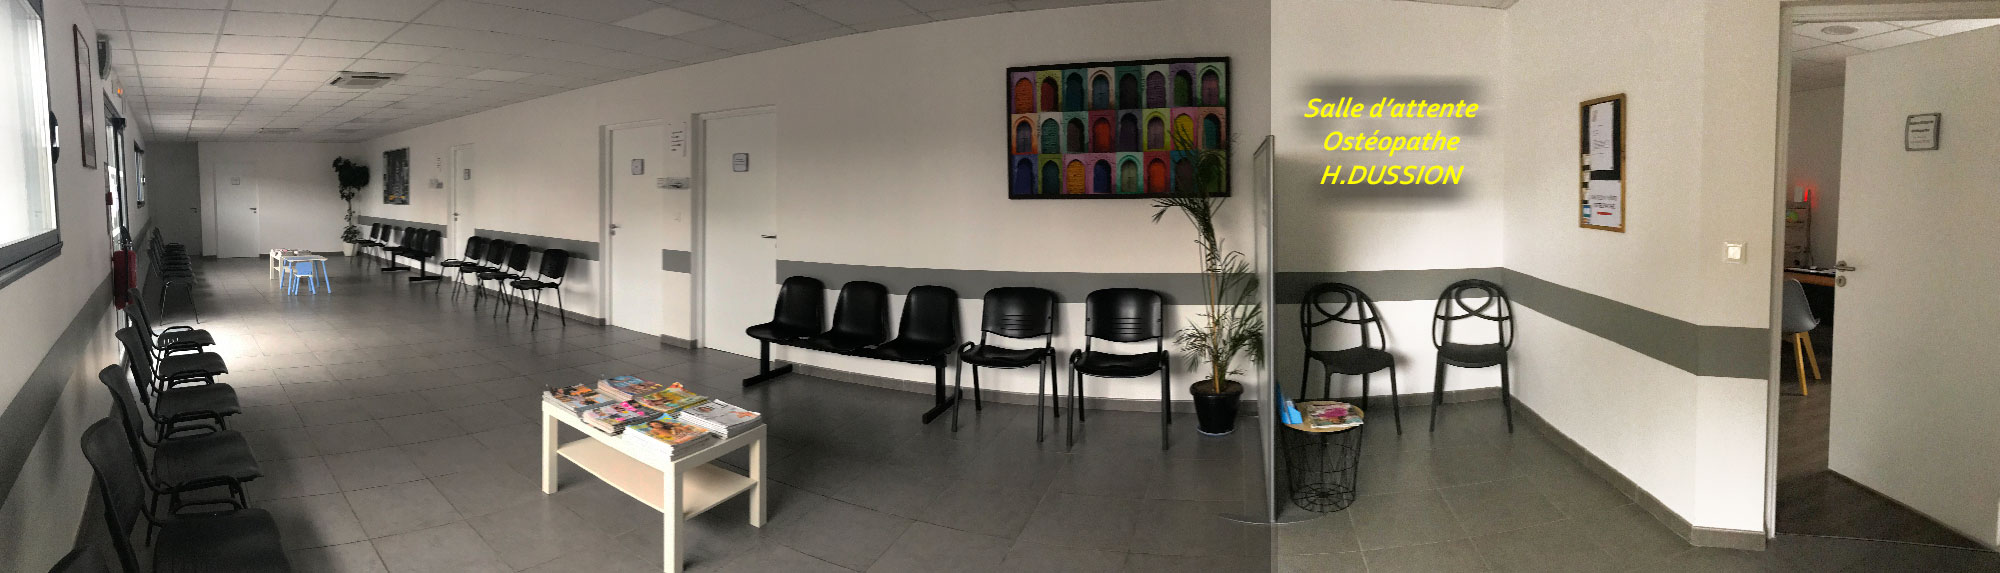 salle d'attente cabinet Ostéopathe Hélène Dussion